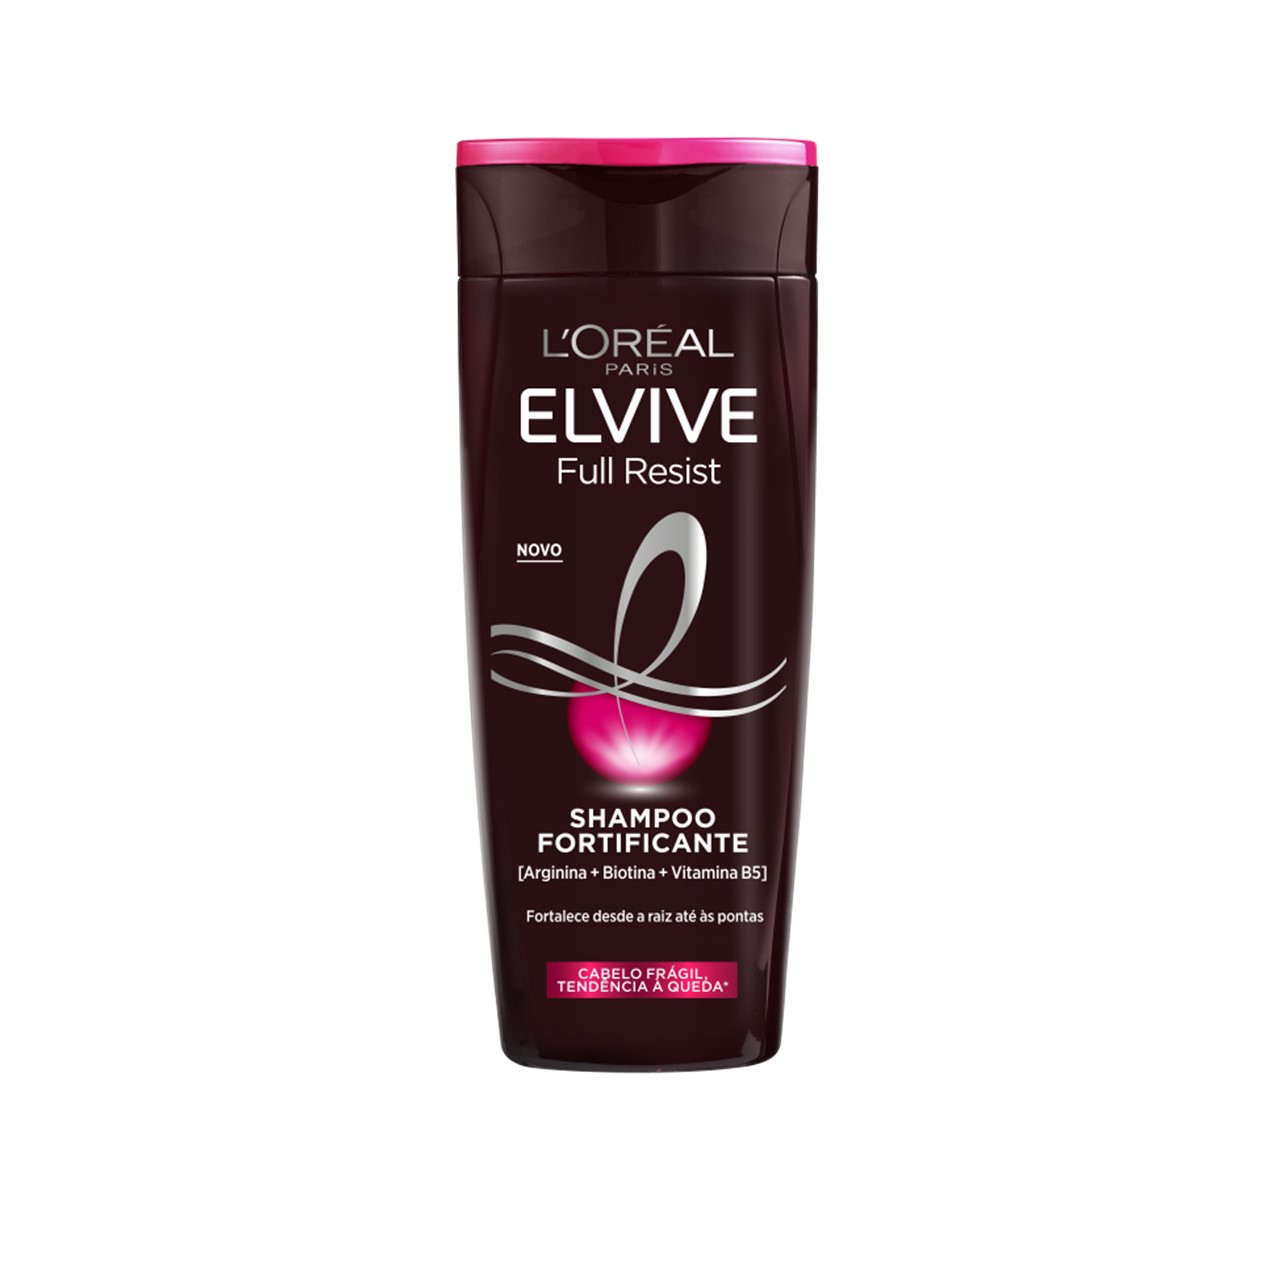 L'Oréal Elvive champú 400 ml. 2 en 1 Arginina. - Tarraco Import Export